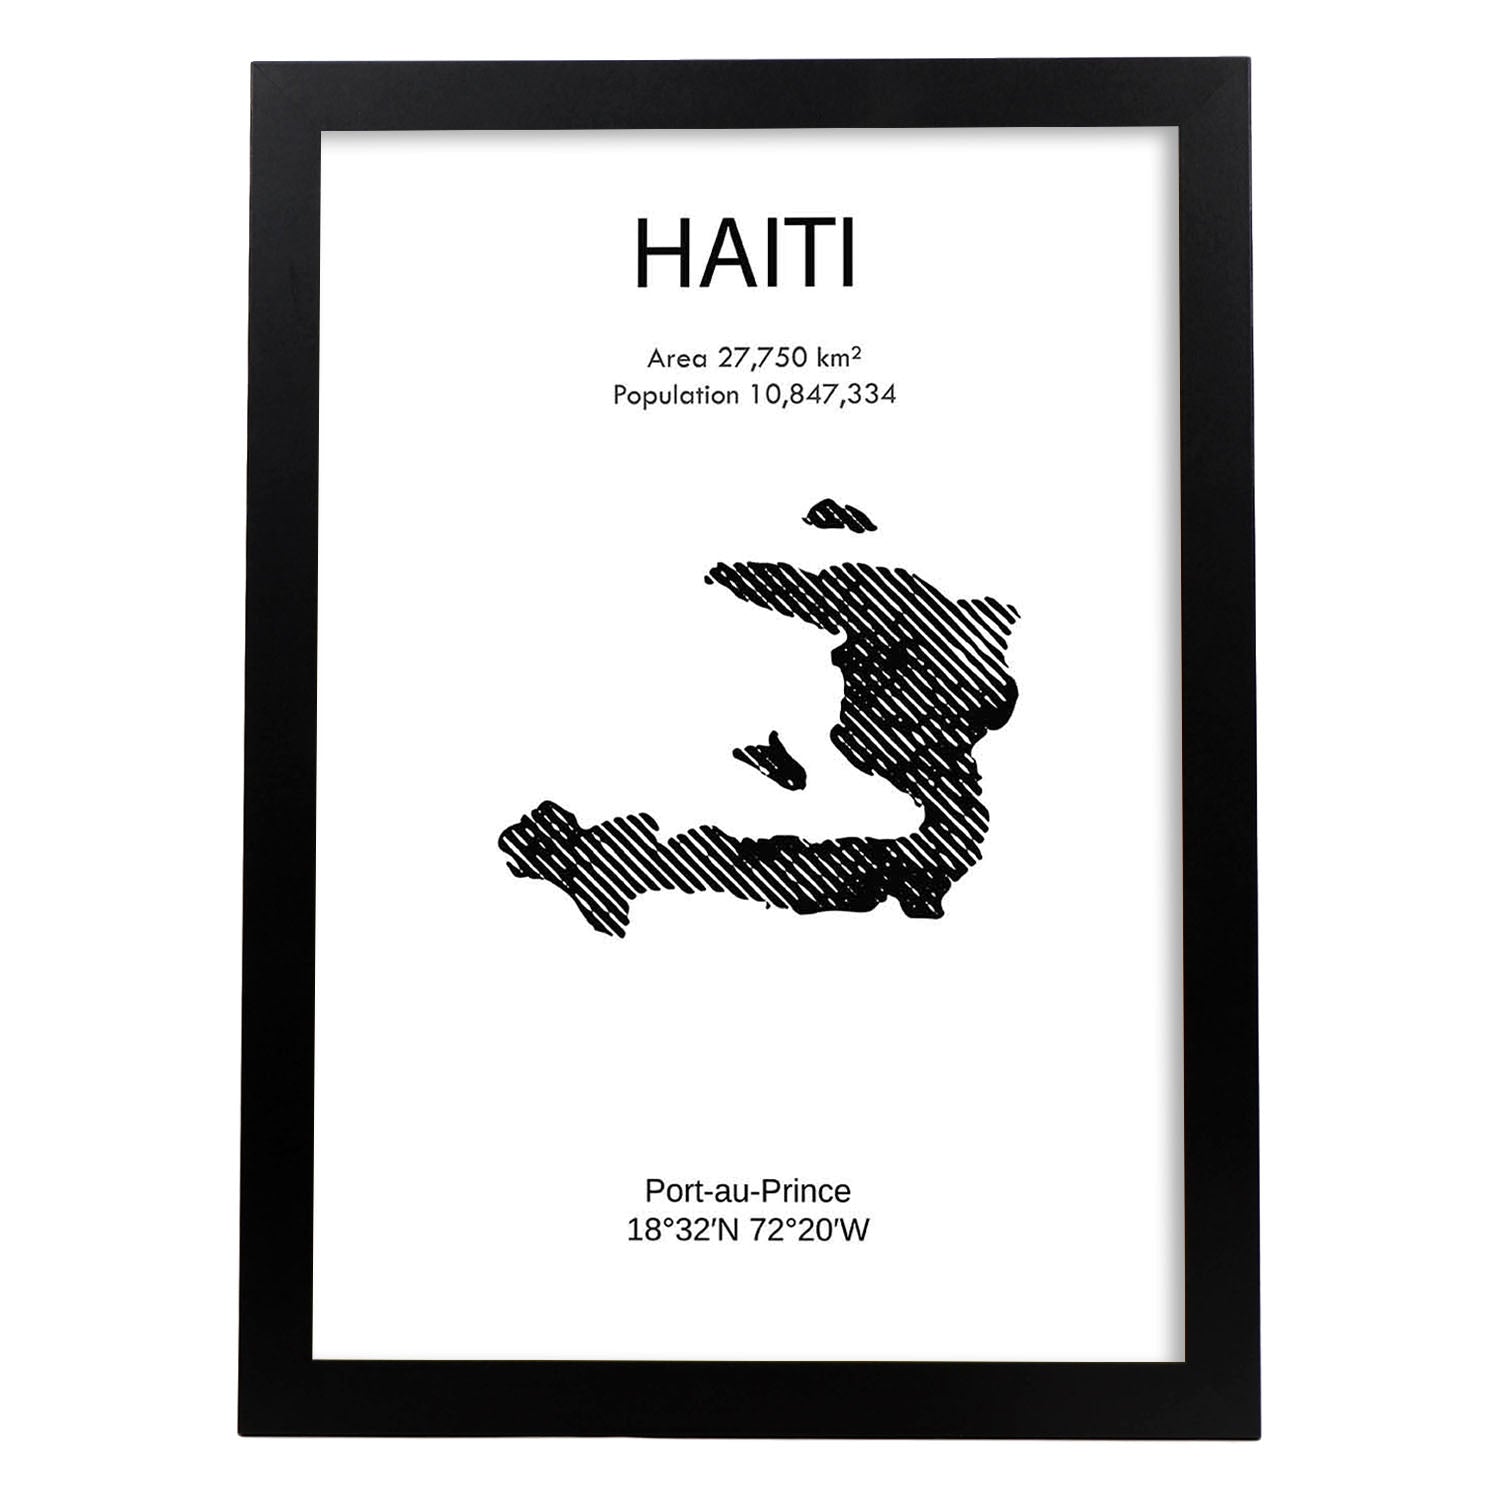 Poster de Haiti. Láminas de paises y continentes del mundo.-Artwork-Nacnic-A3-Marco Negro-Nacnic Estudio SL